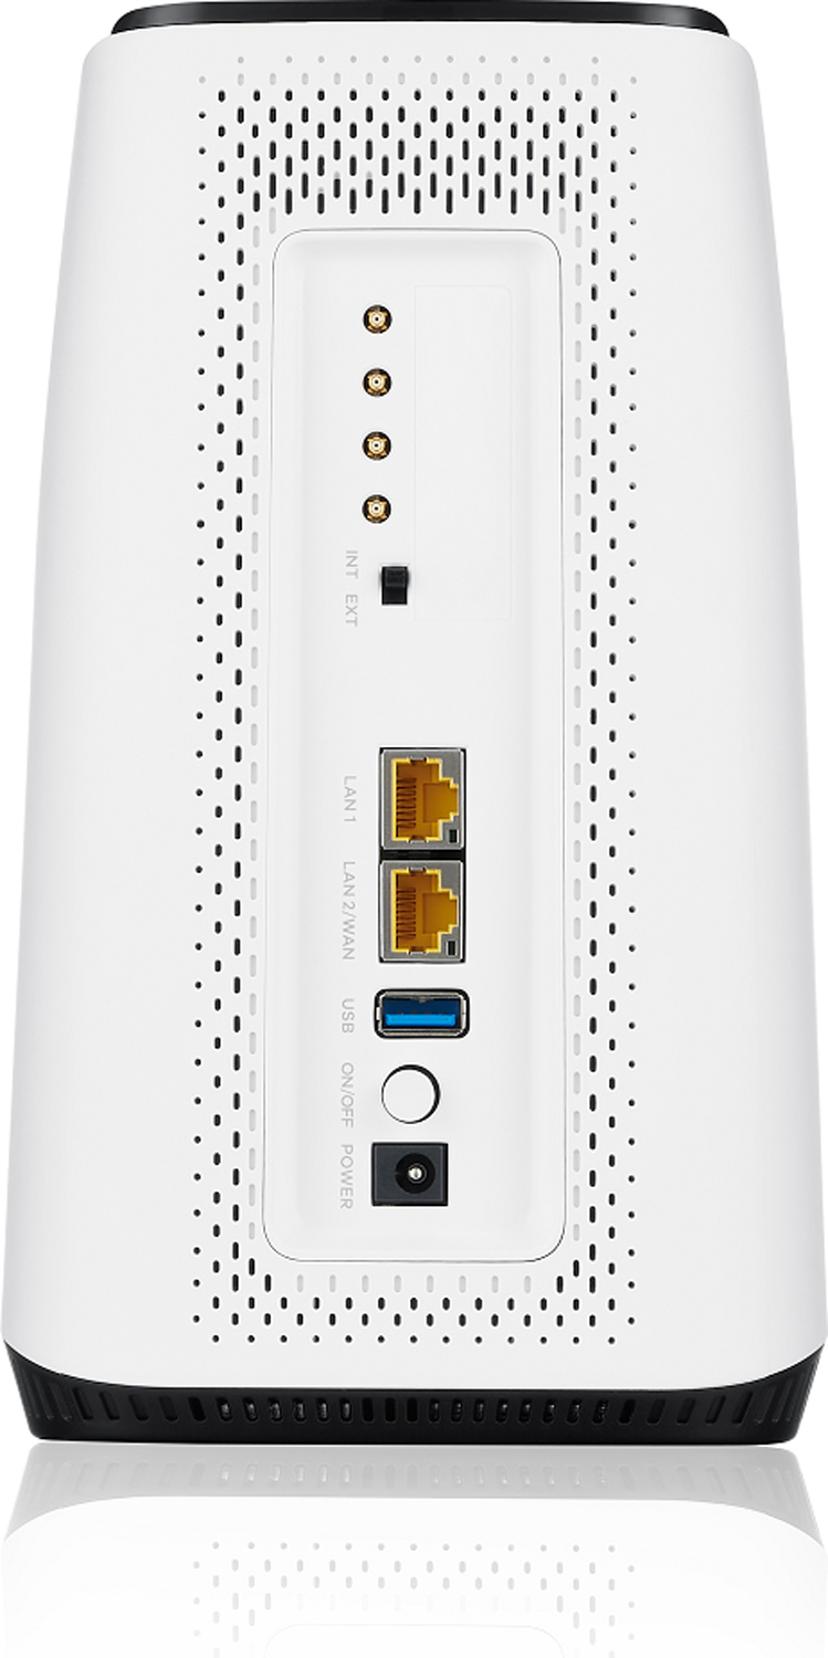 Zyxel Nebula FWA510 5G WiFi 6 Router + XPOL-24 4X4 5G/LTE MIMO Antenna